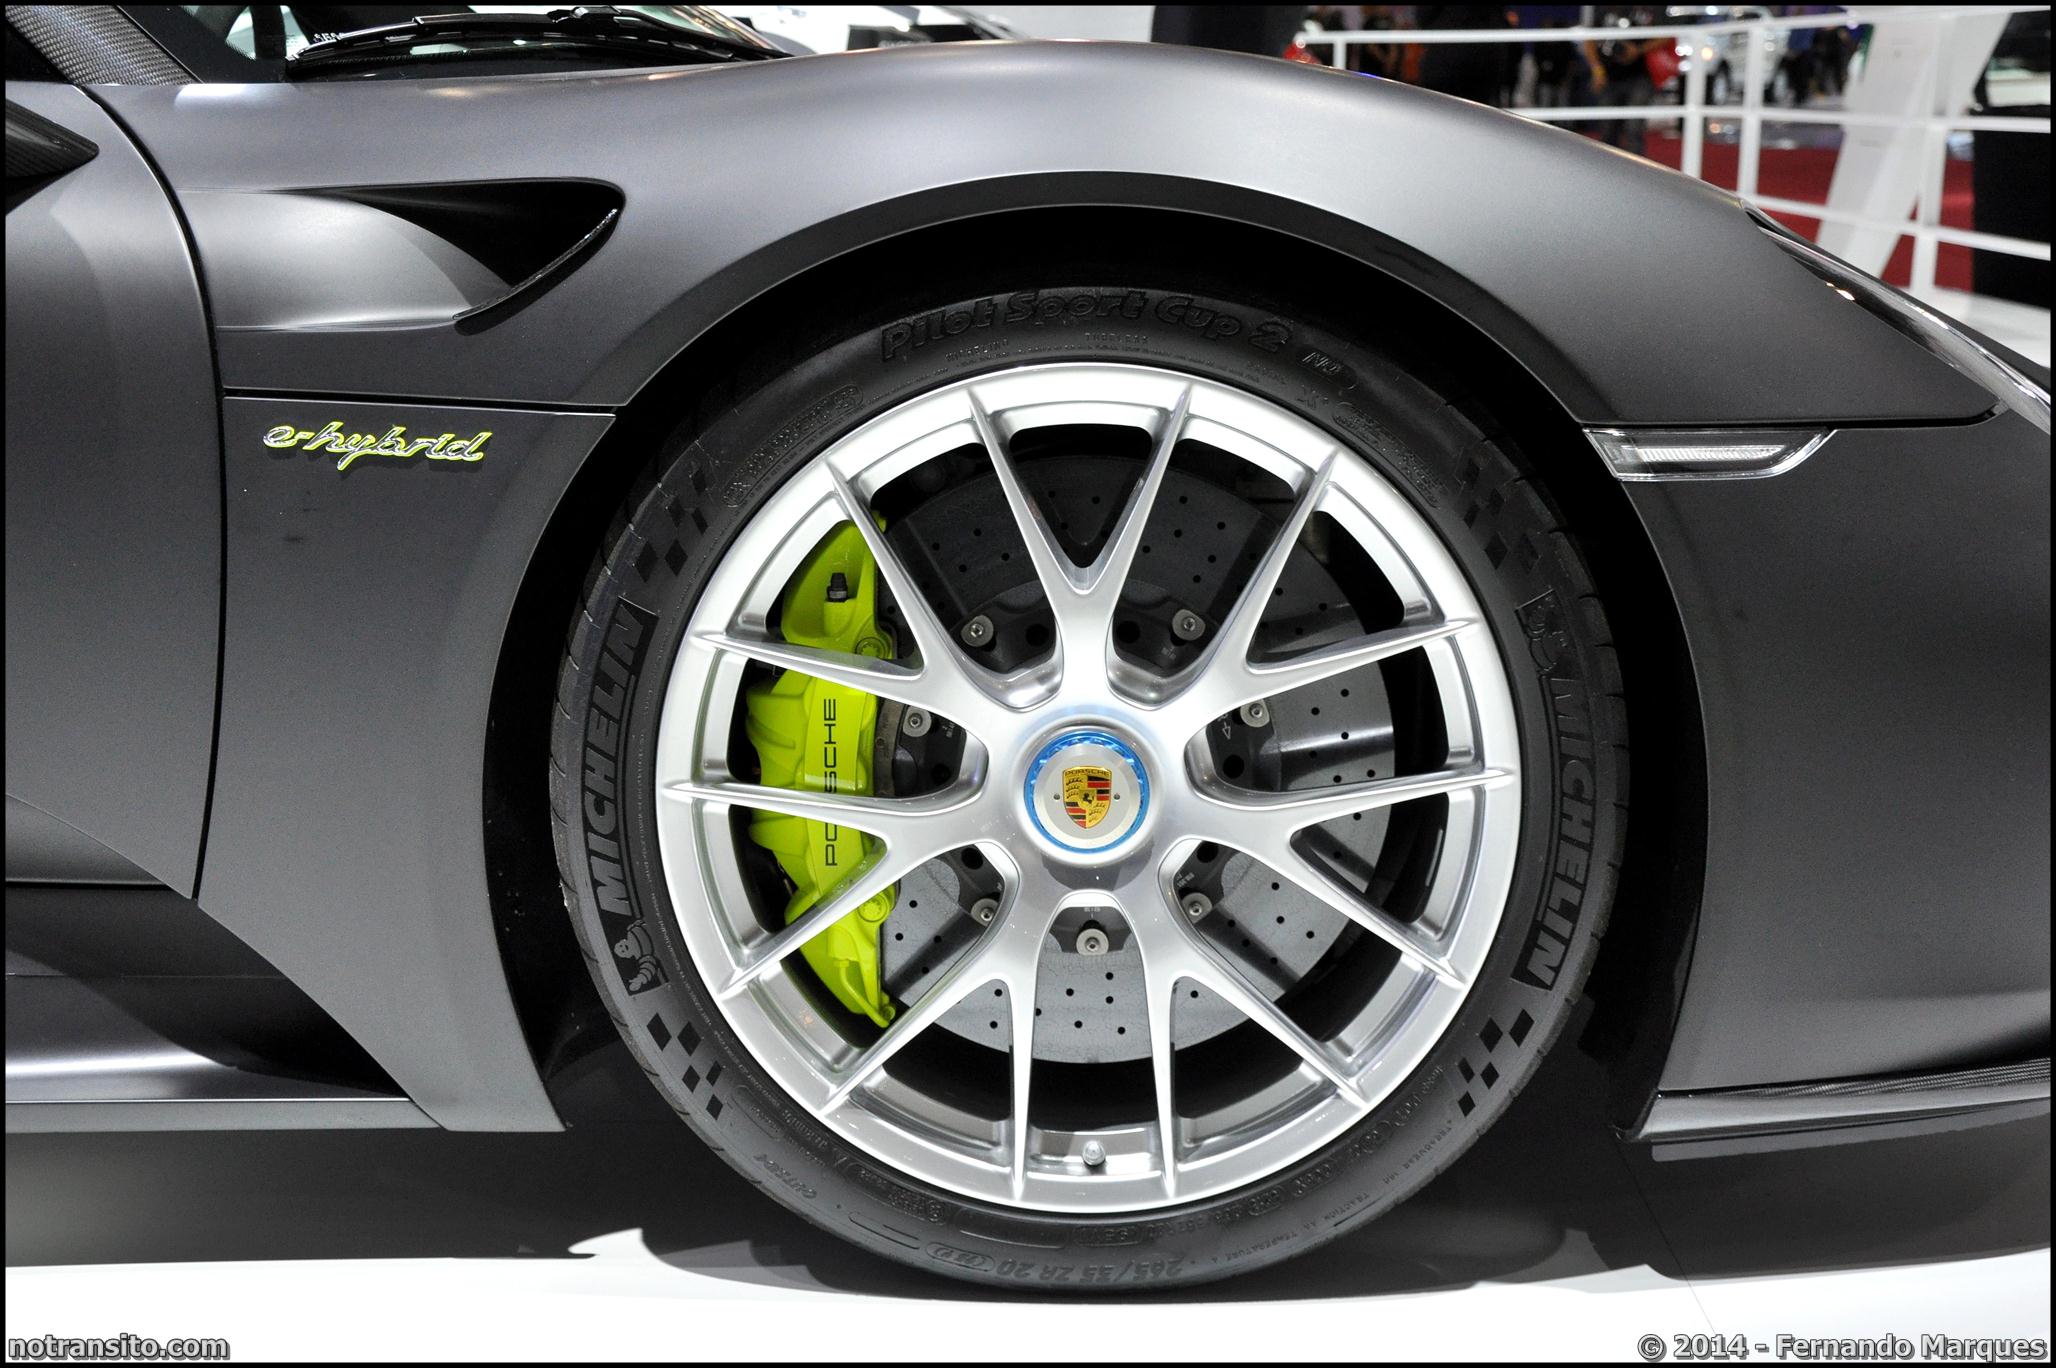 Porsche 918 Spyder, Salão do Automóvel 2014